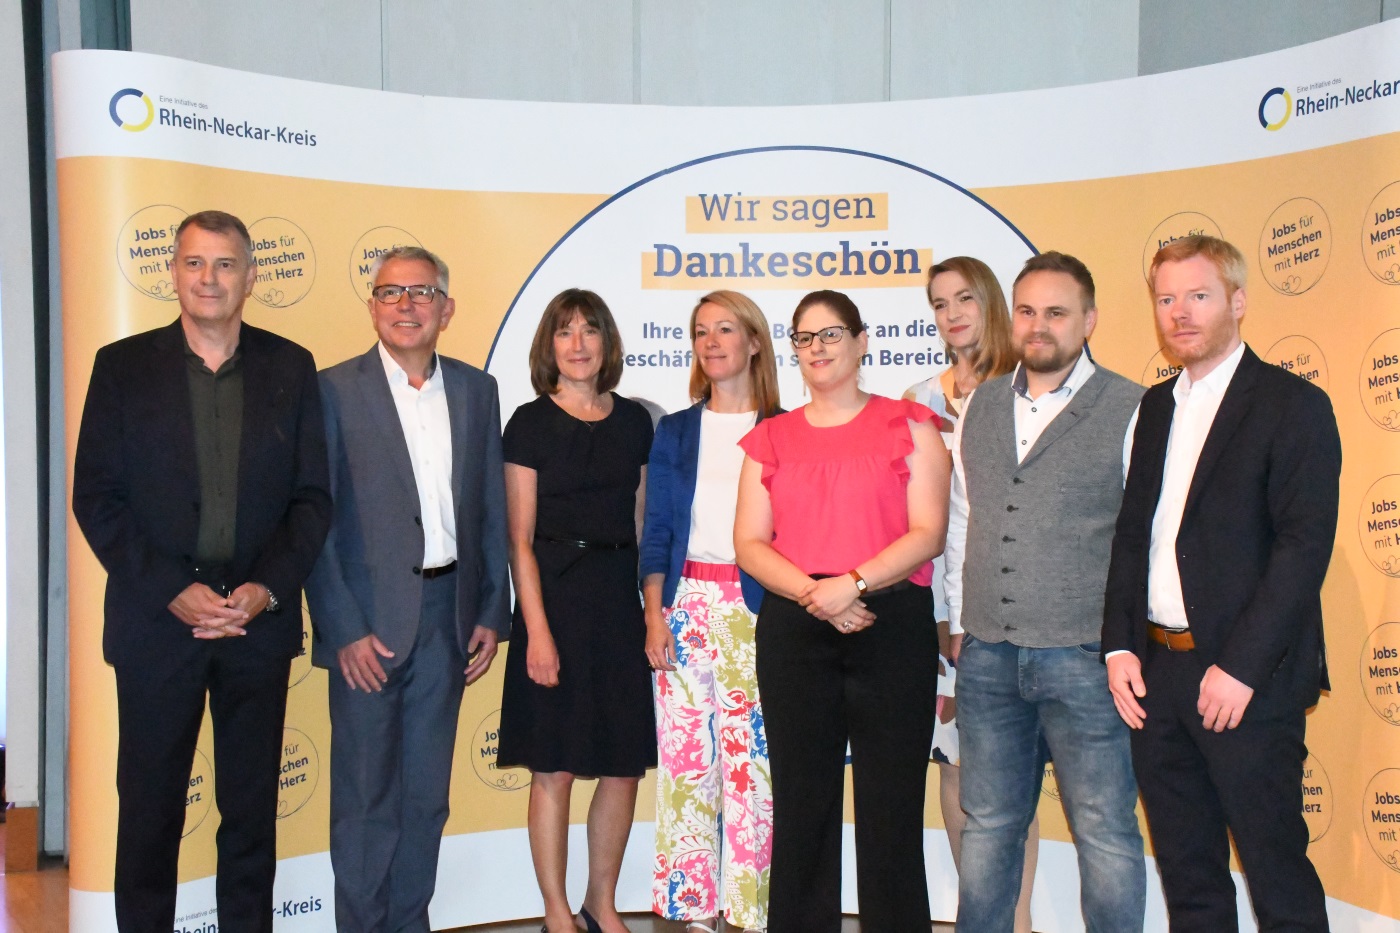 Abschlussveranstaltung der Kampagne Soziale Berufe / Berufe mit Herz vom Rhein-Neckar-Kreis im Palatin Wiesloch